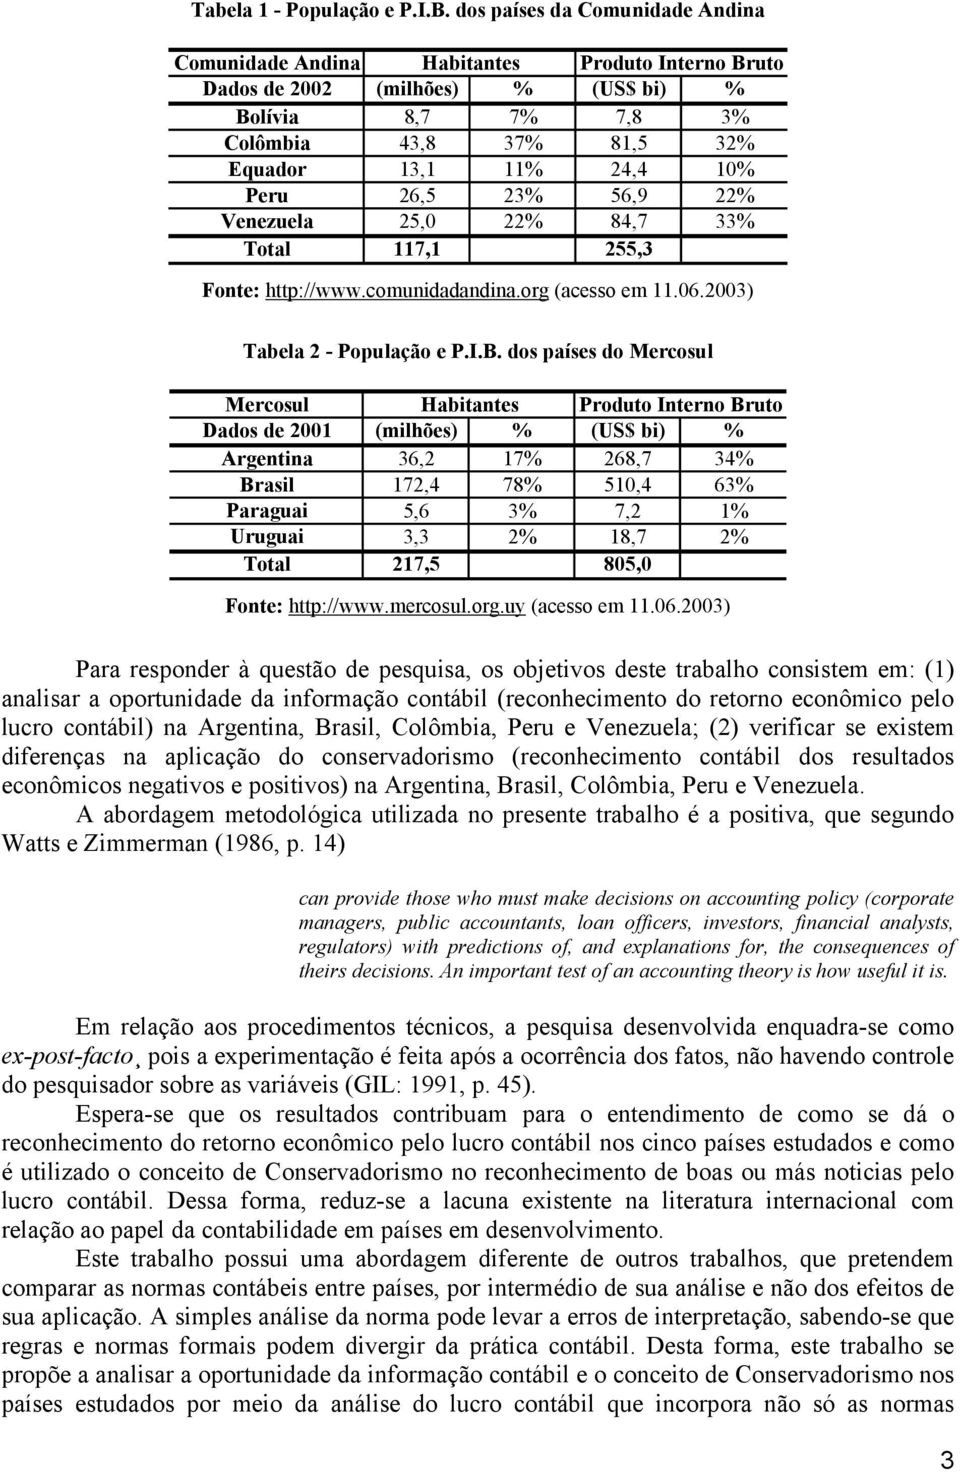 26,5 23% 56,9 22% Venezuela 25,0 22% 84,7 33% Total 117,1 255,3 Fonte: http://www.comunidadandina.org (acesso em 11.06.2003) Tabela 2 - População e P.I.B.